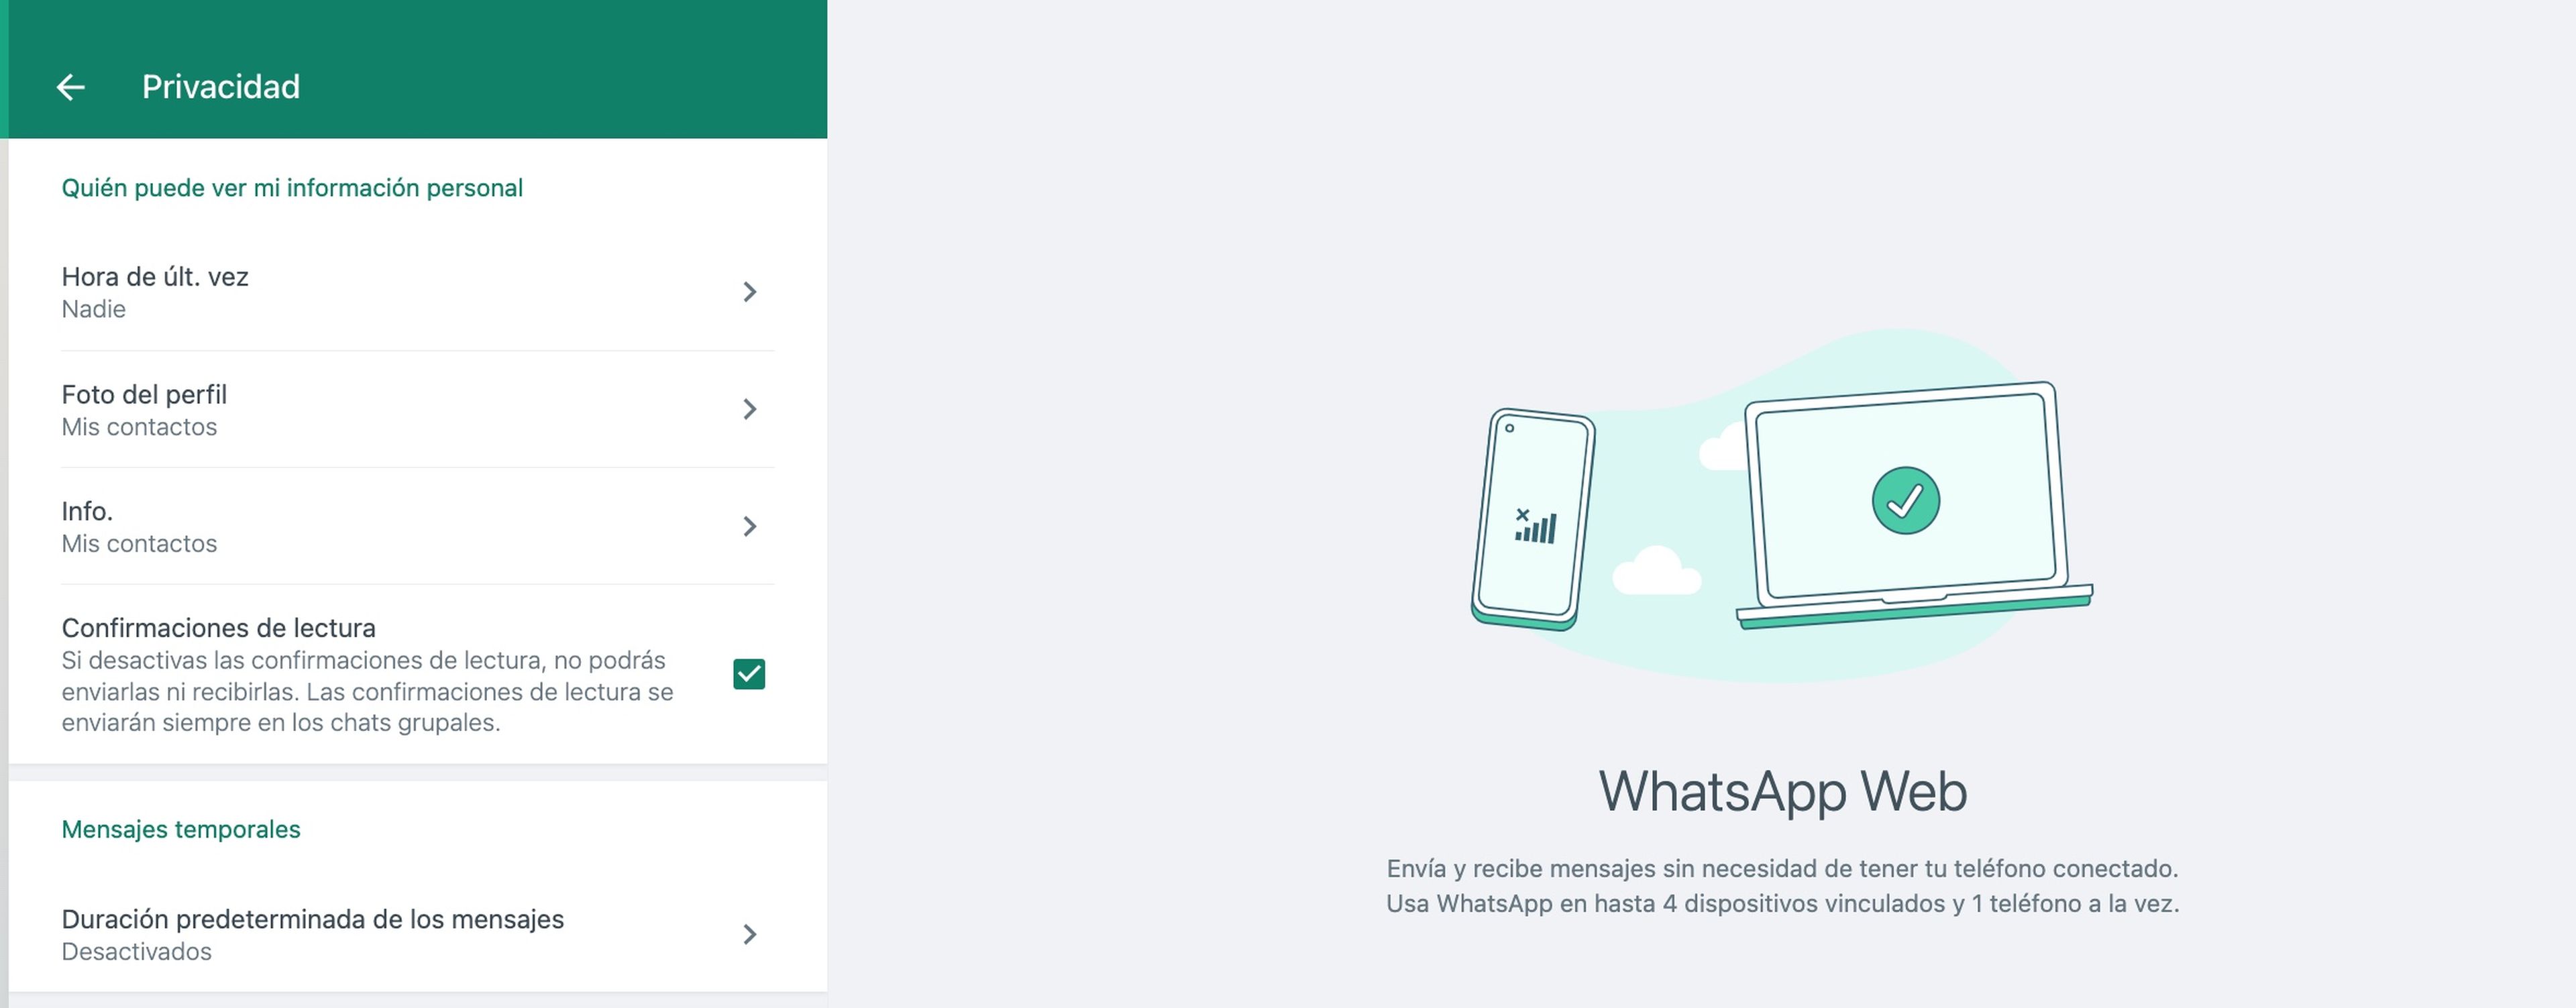 Opciones de privacidad de WhatsApp Web